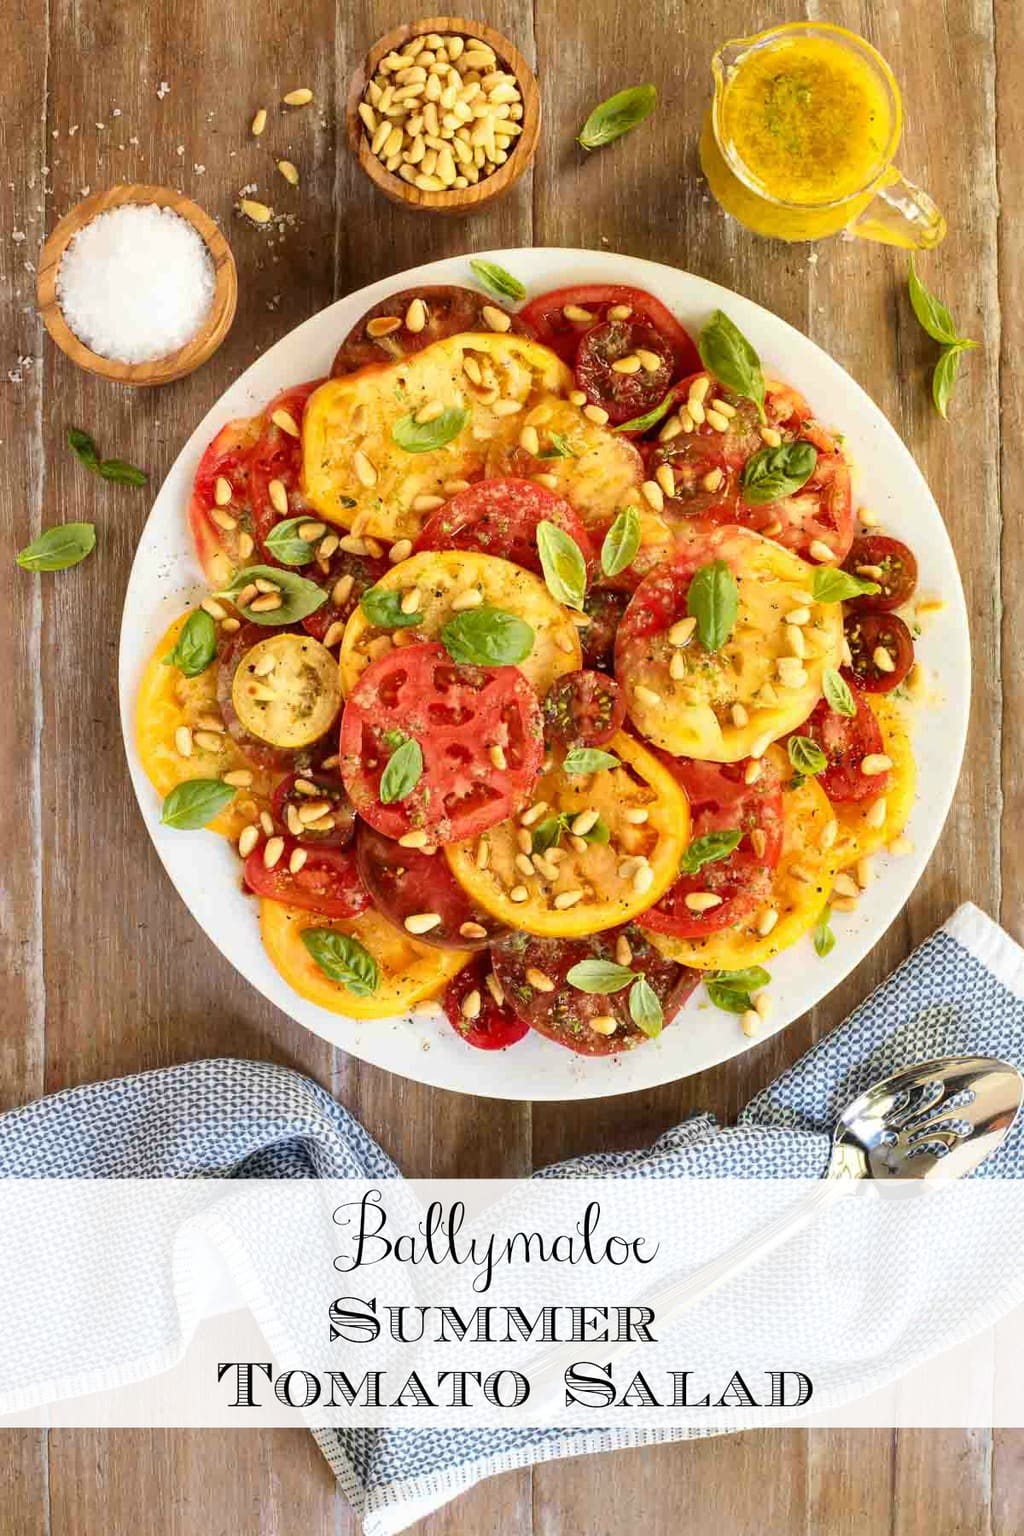 Ballymaloe Summer Tomato Salad